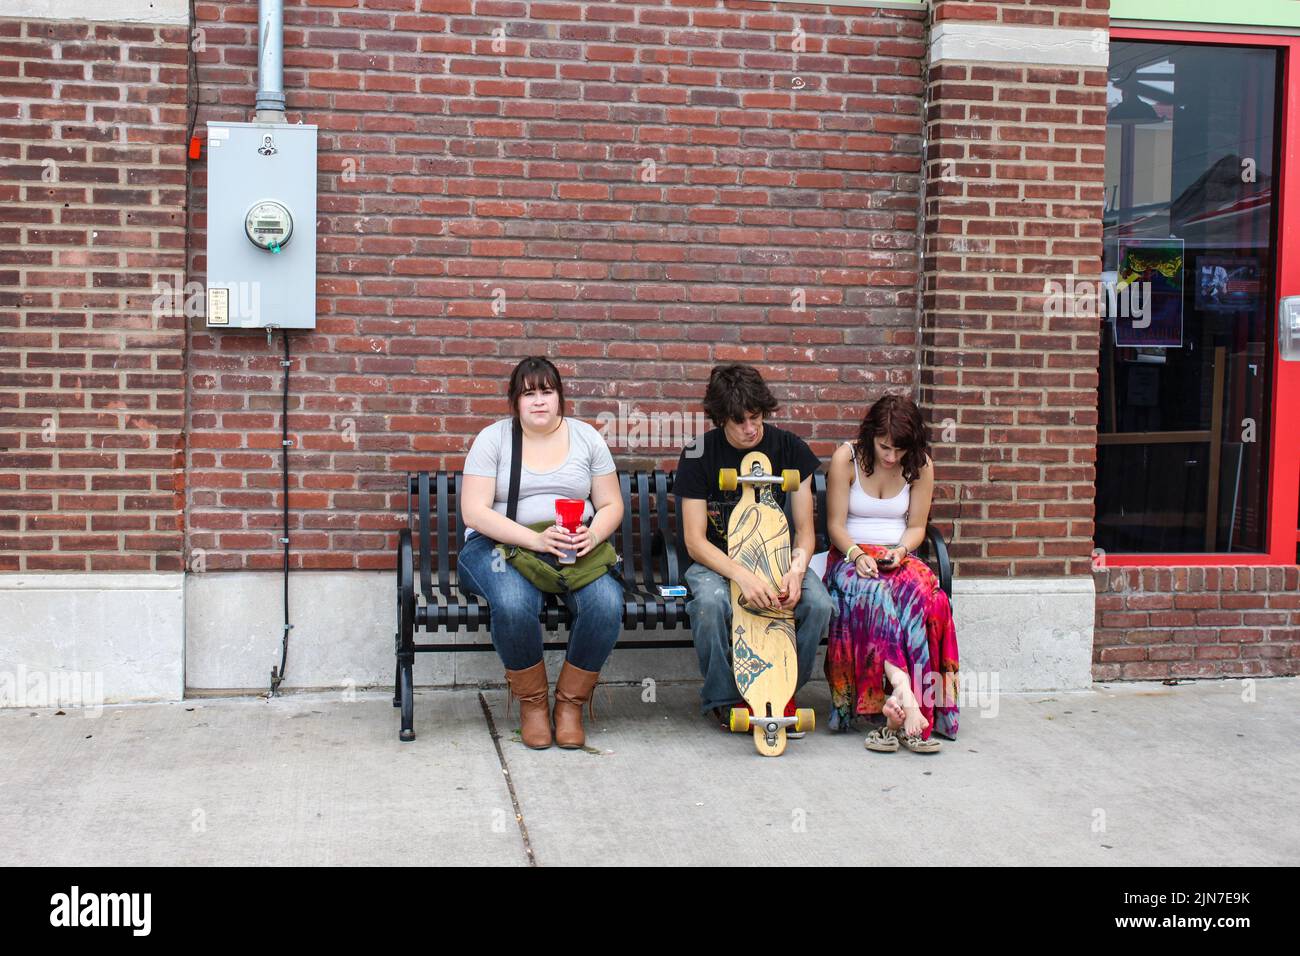 Tres adultos jóvenes sentados en un banco urbano - mujer bonita con sobrepeso - skater con expresión extraña - chica con camisa de tiedyed mirando el teléfono Foto de stock